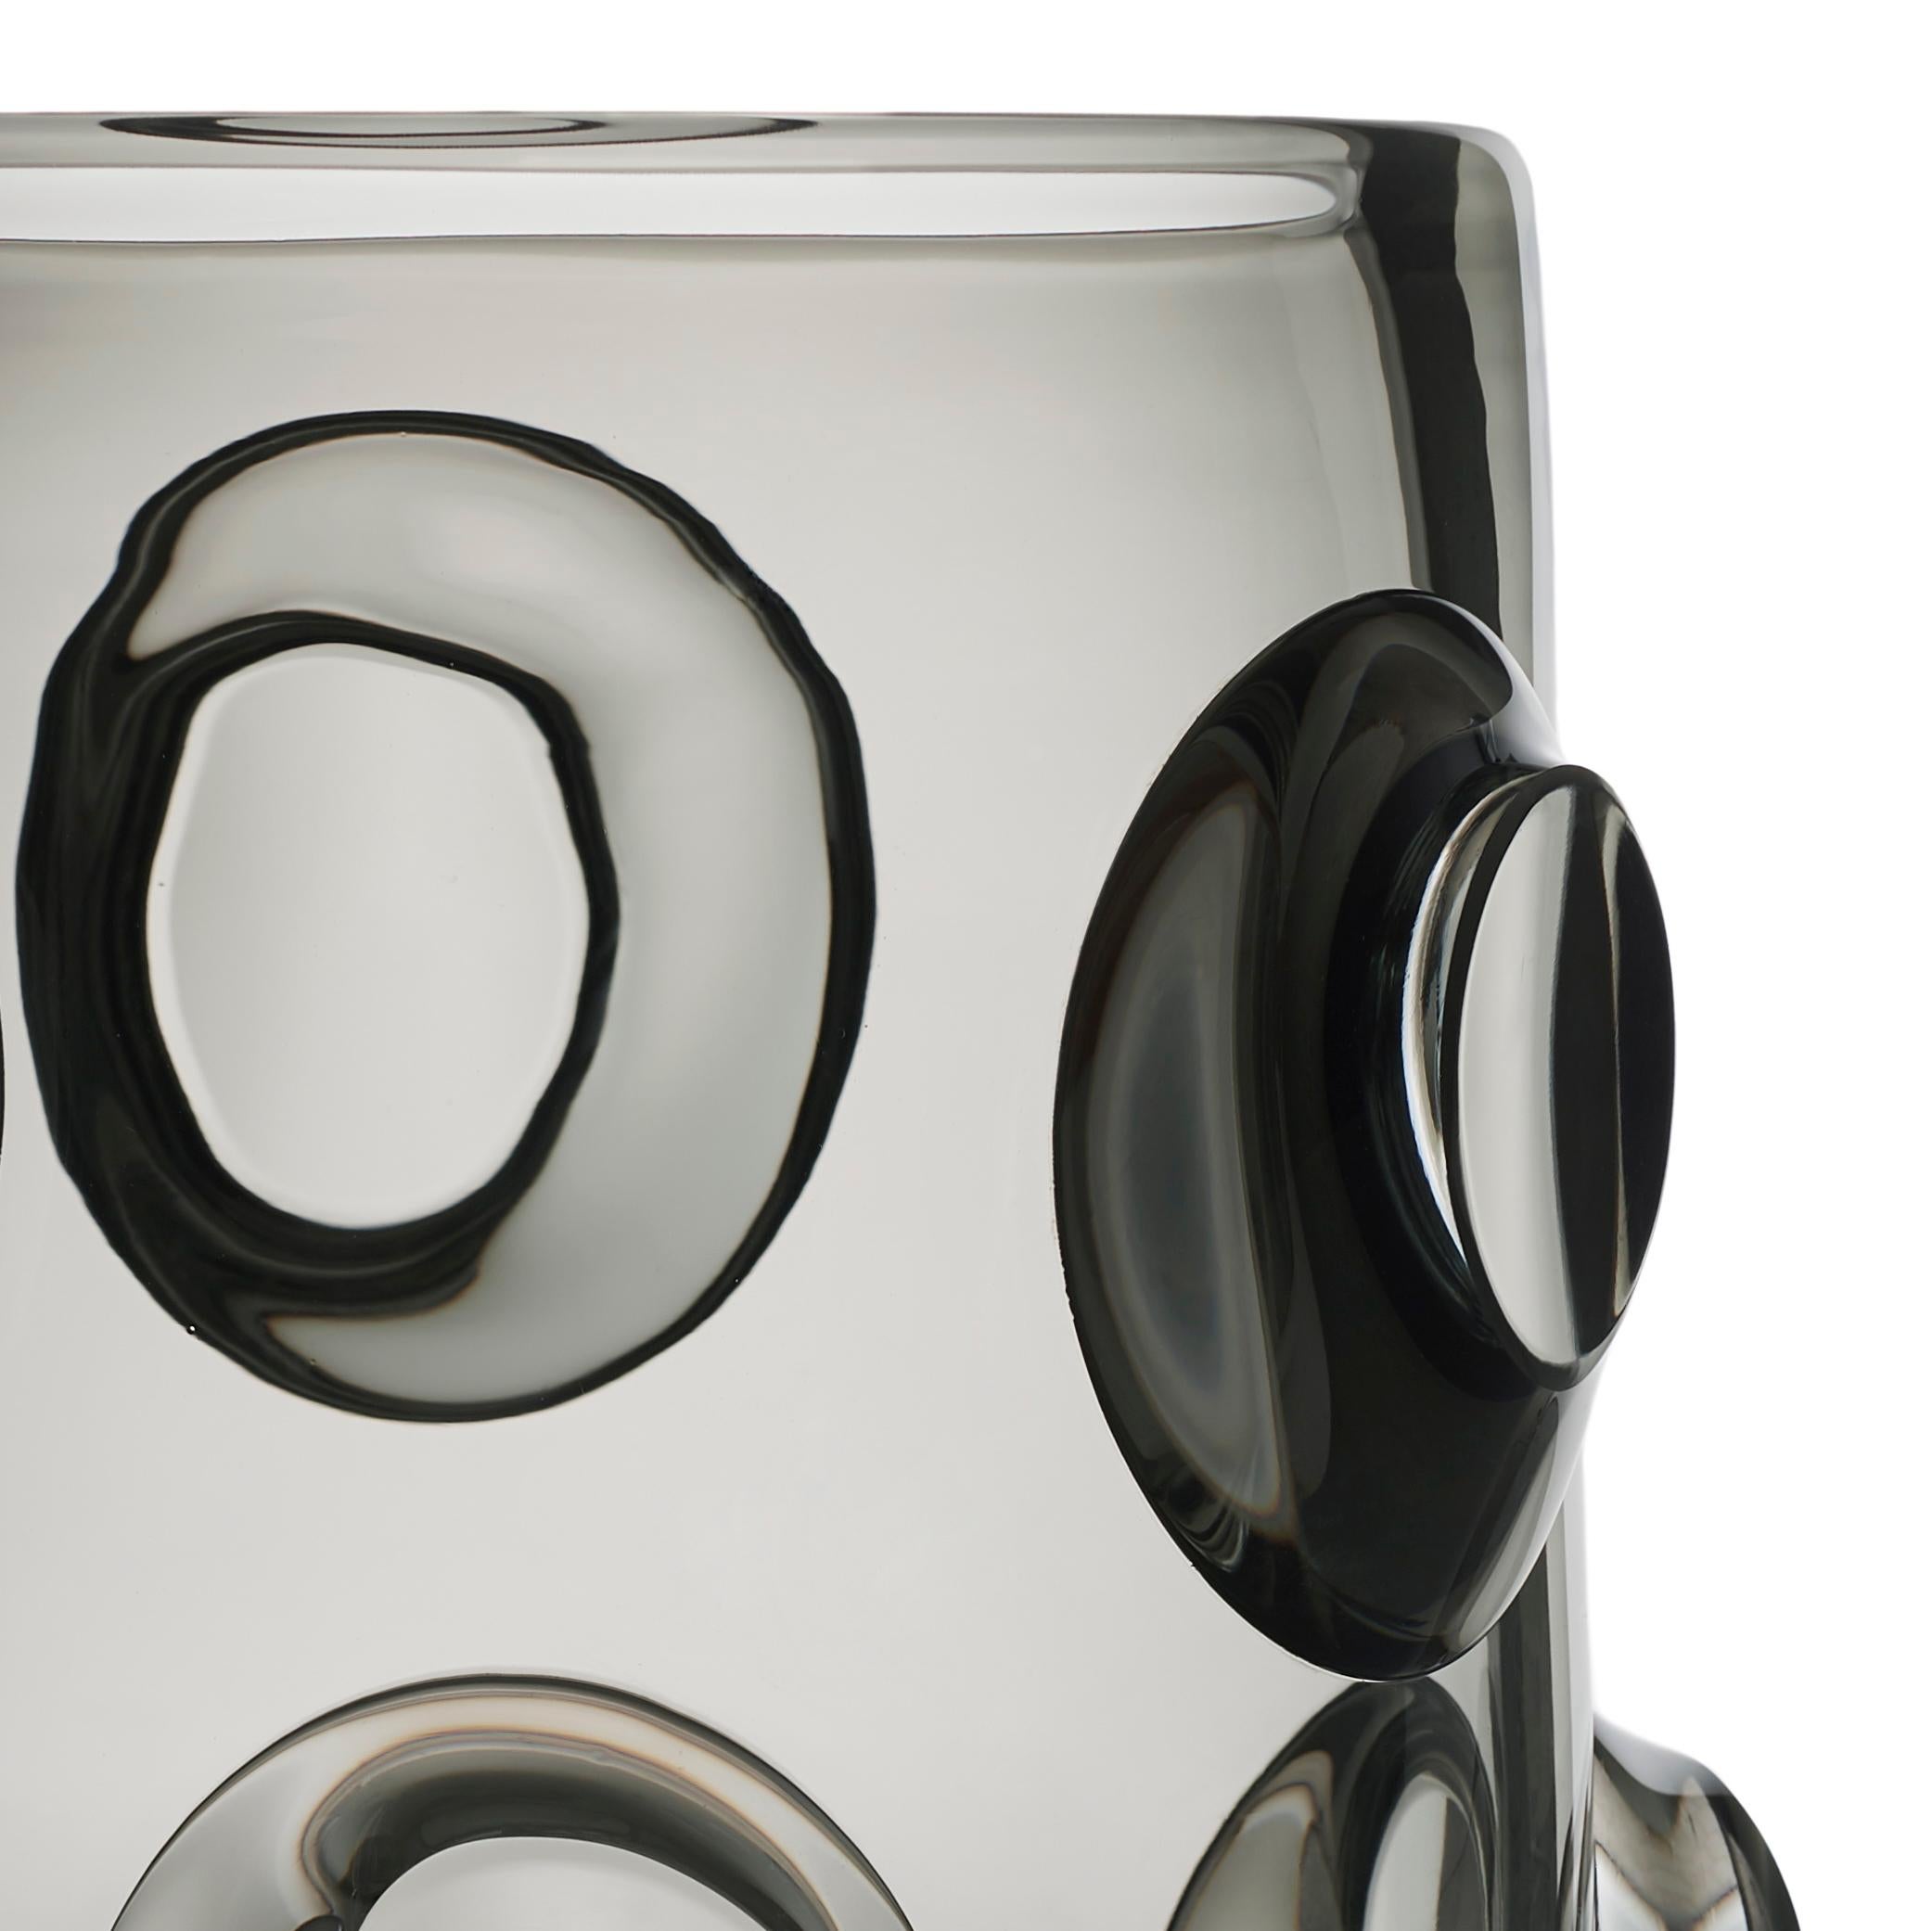 Bois in verre C est un vase à bouche, soufflé et façonné à la main, de couleur gris acier, taille brillant.
Edition de 33 pièces uniques signées et numérotées par Marcello Panza. Les pièces d'art d'Arcade sont fabriquées à la main dans notre